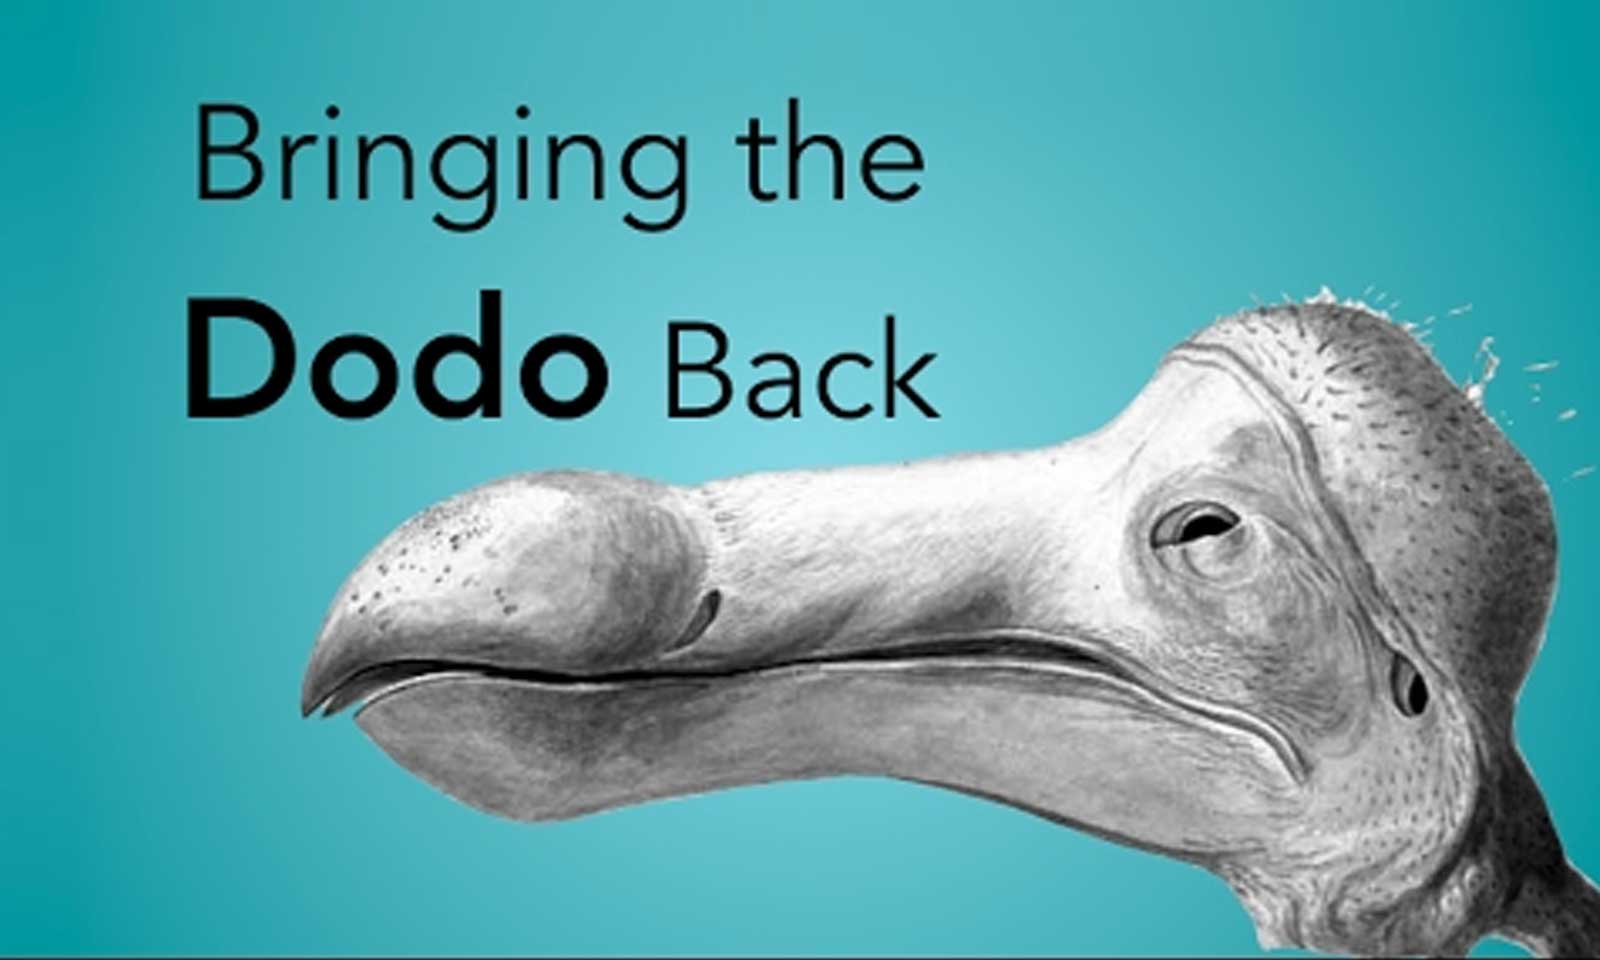 Clonage dodo